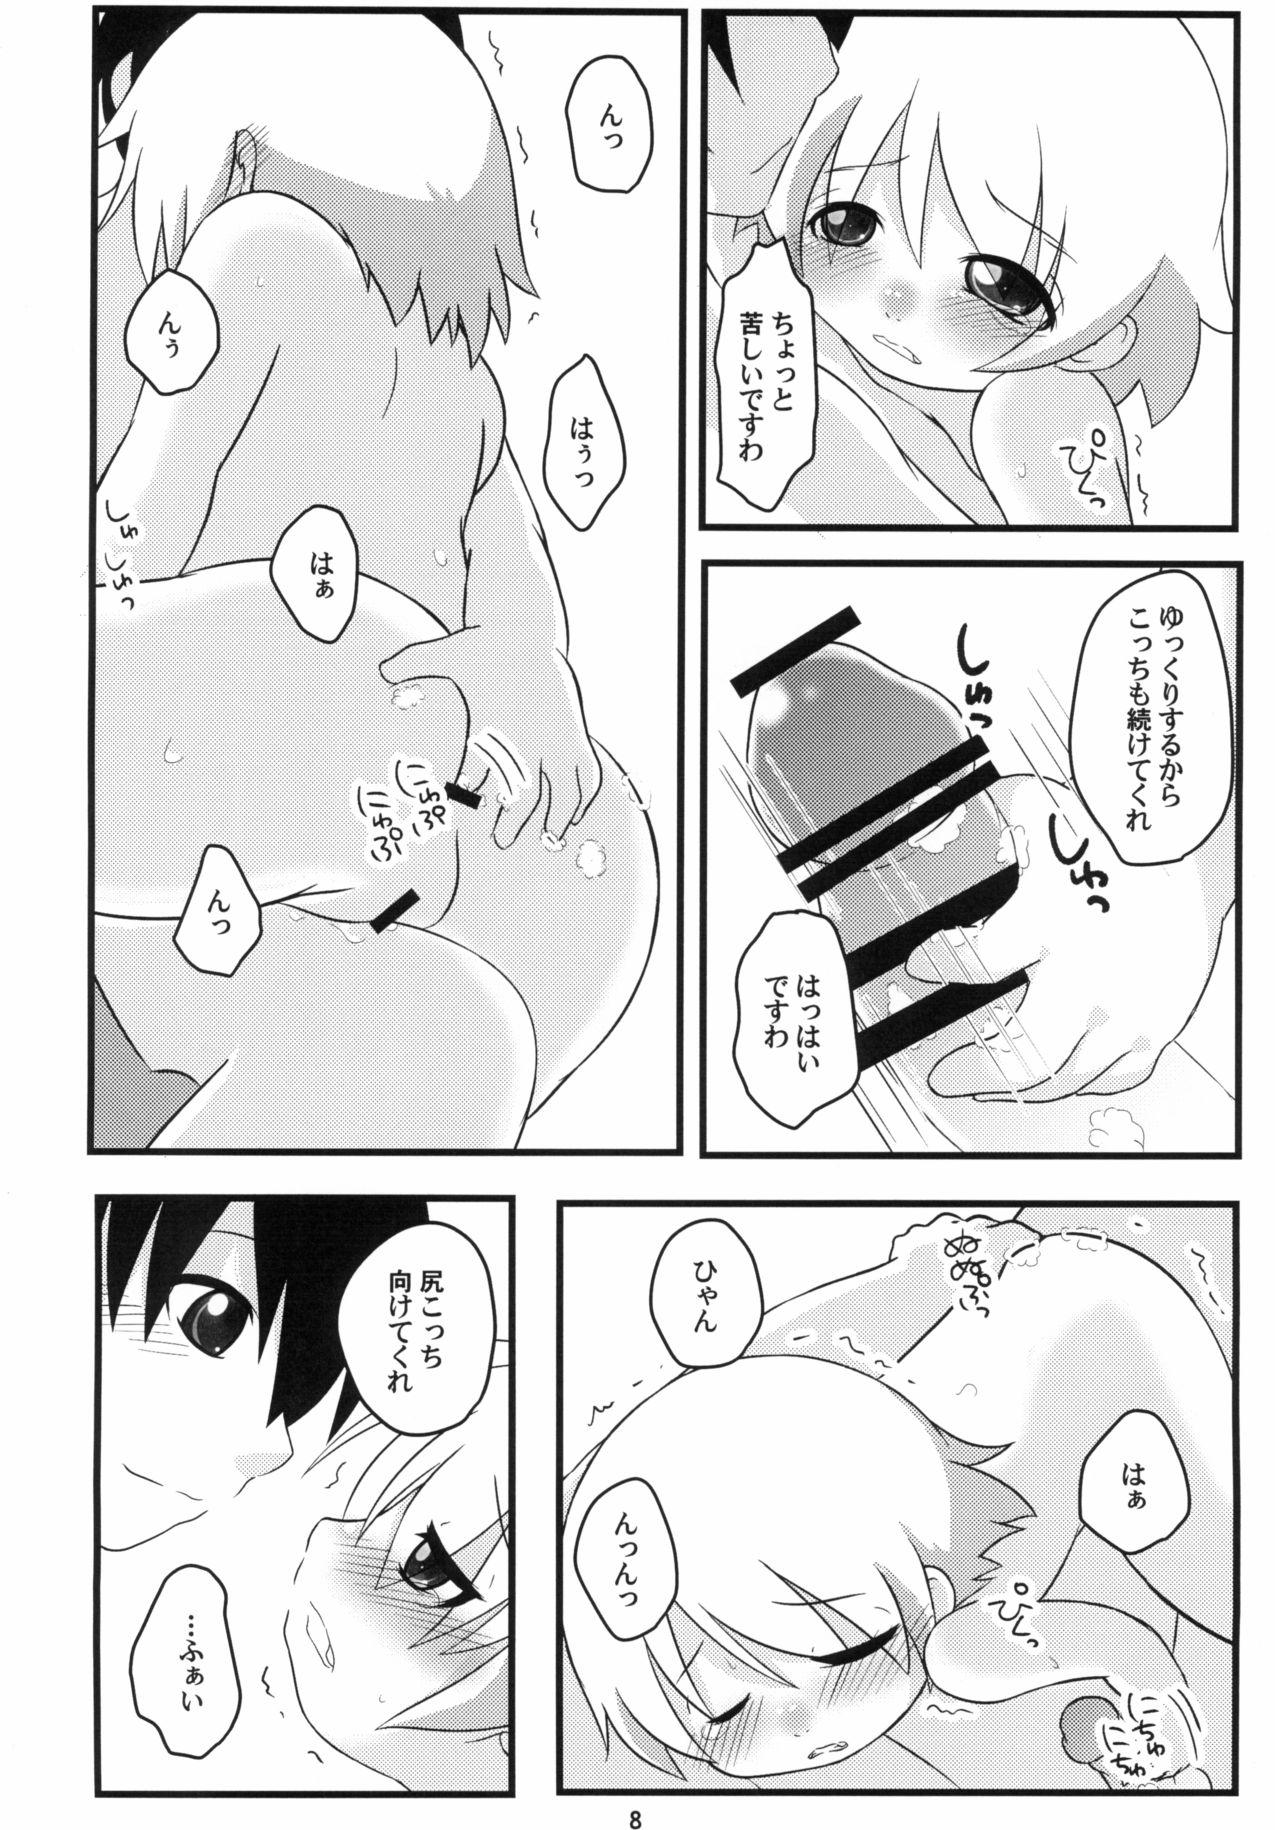 Sex Toy Hinamisawa Karagenki - Higurashi no naku koro ni | when they cry Cdzinha - Page 8